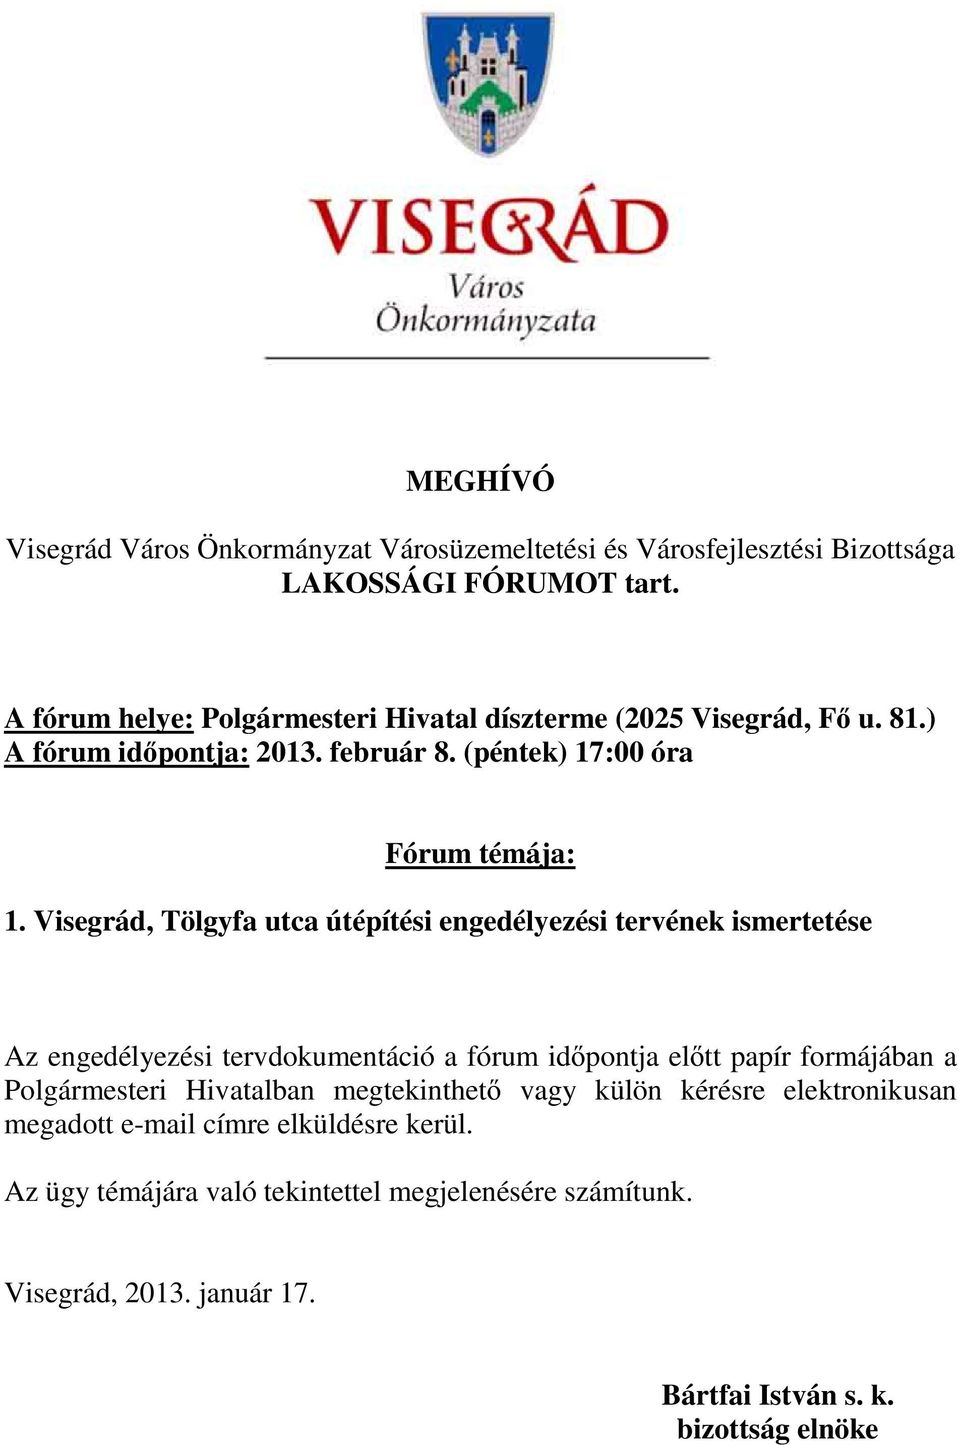 Visegrád, Tölgyfa utca útépítési engedélyezési tervének ismertetése Az engedélyezési tervdokumentáció a fórum id pontja el tt papír formájában a Polgármesteri